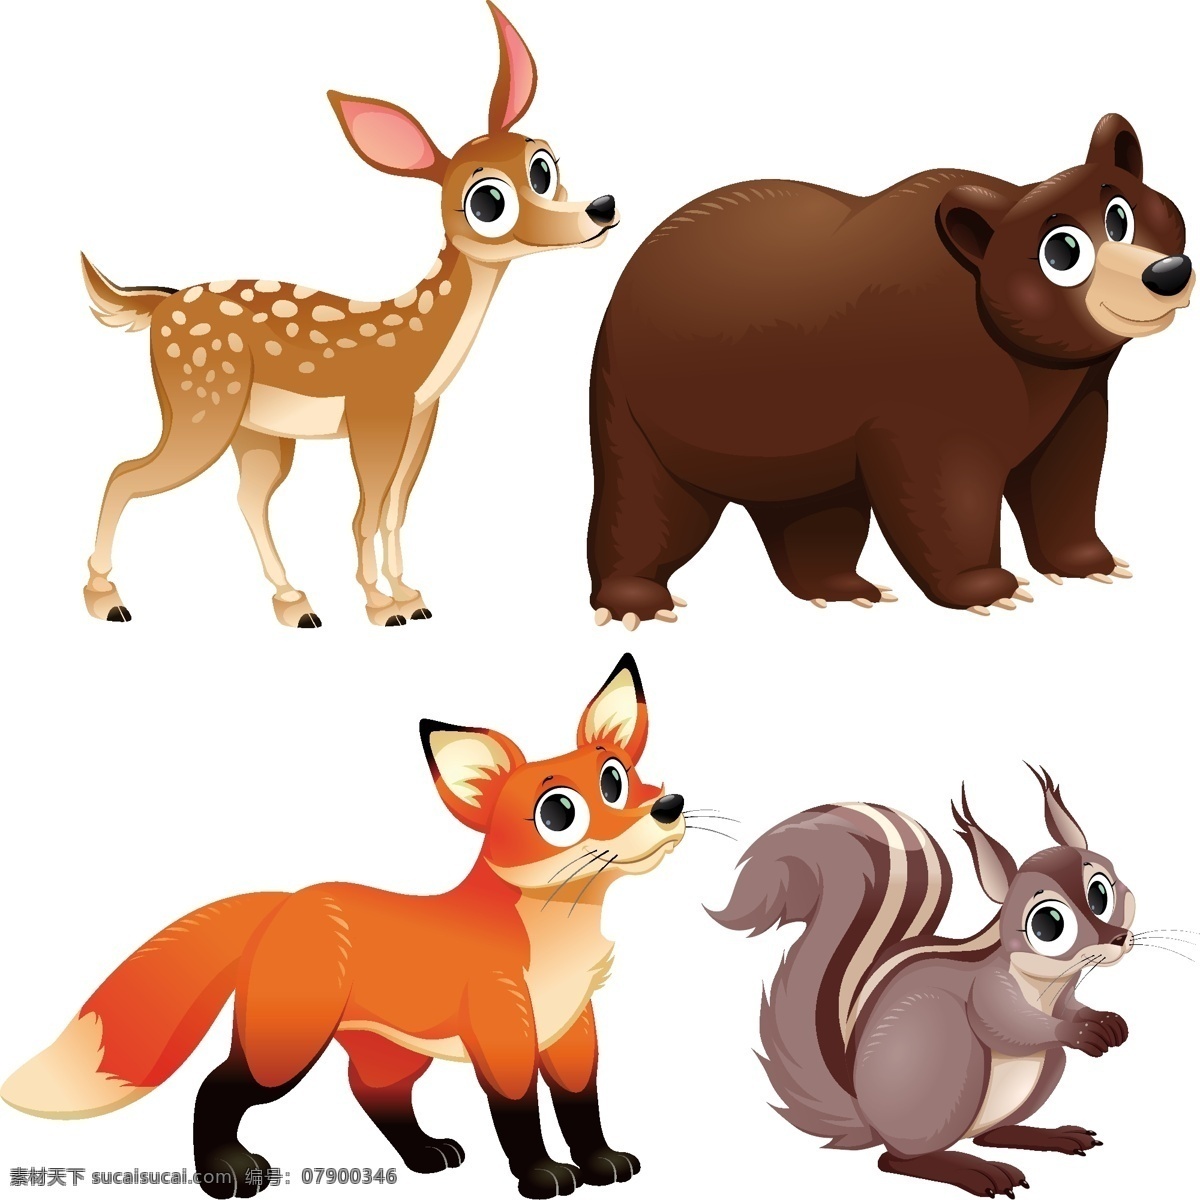 组 大 眼睛 可爱 动物 卡通 卡哇伊 矢量素材 小动物 创意设计 简约 创意 元素 生物元素 动物元素